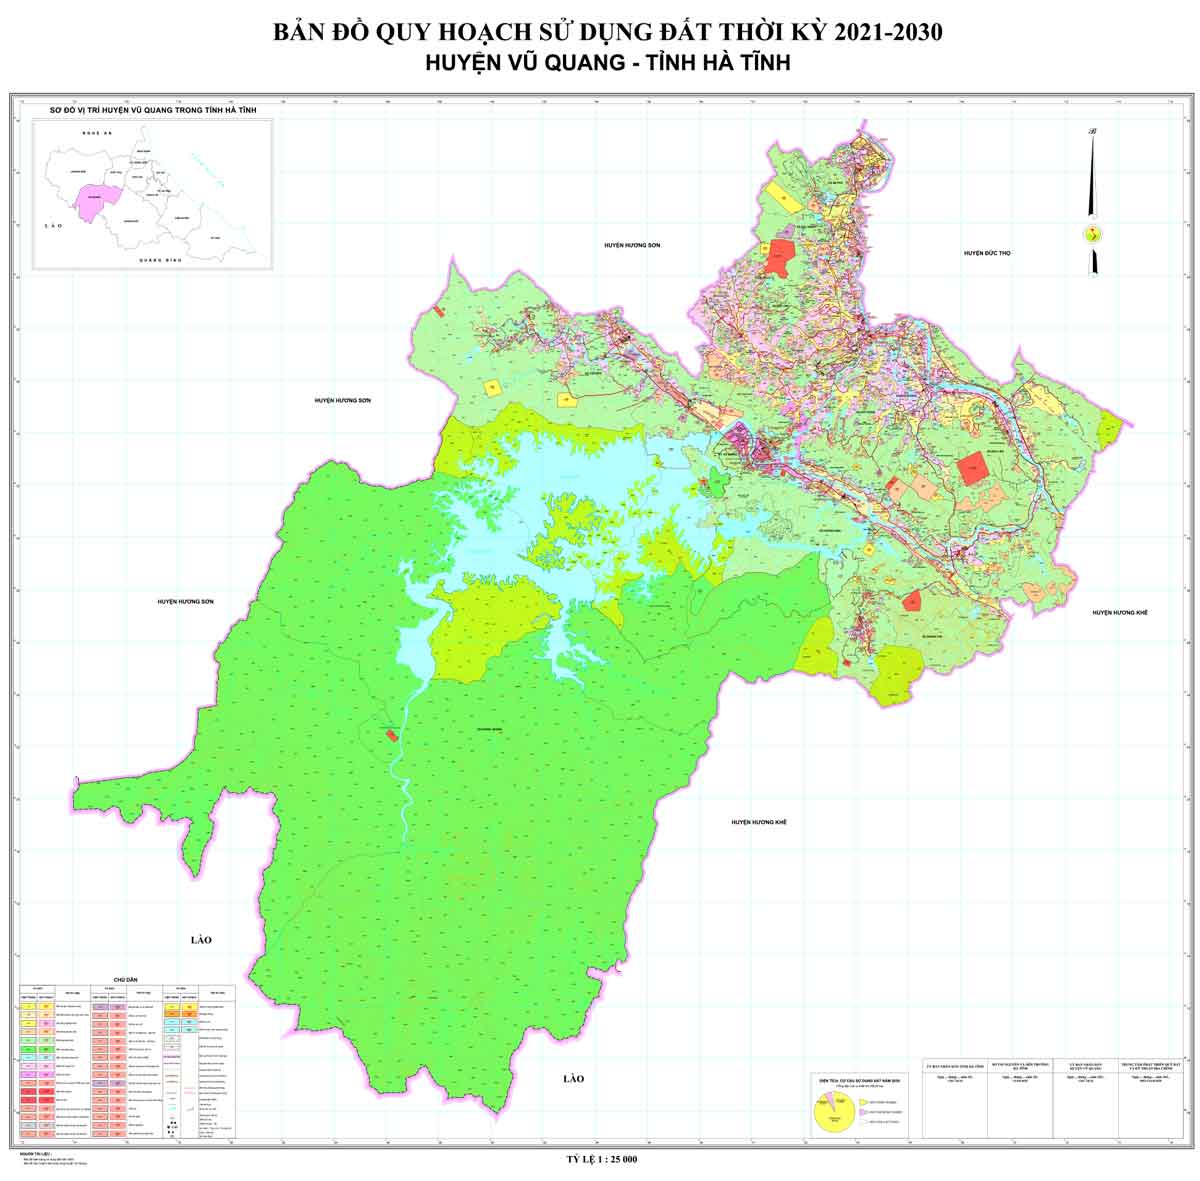 Bản đồ QHSDĐ huyện Vũ Quang đến năm 2030